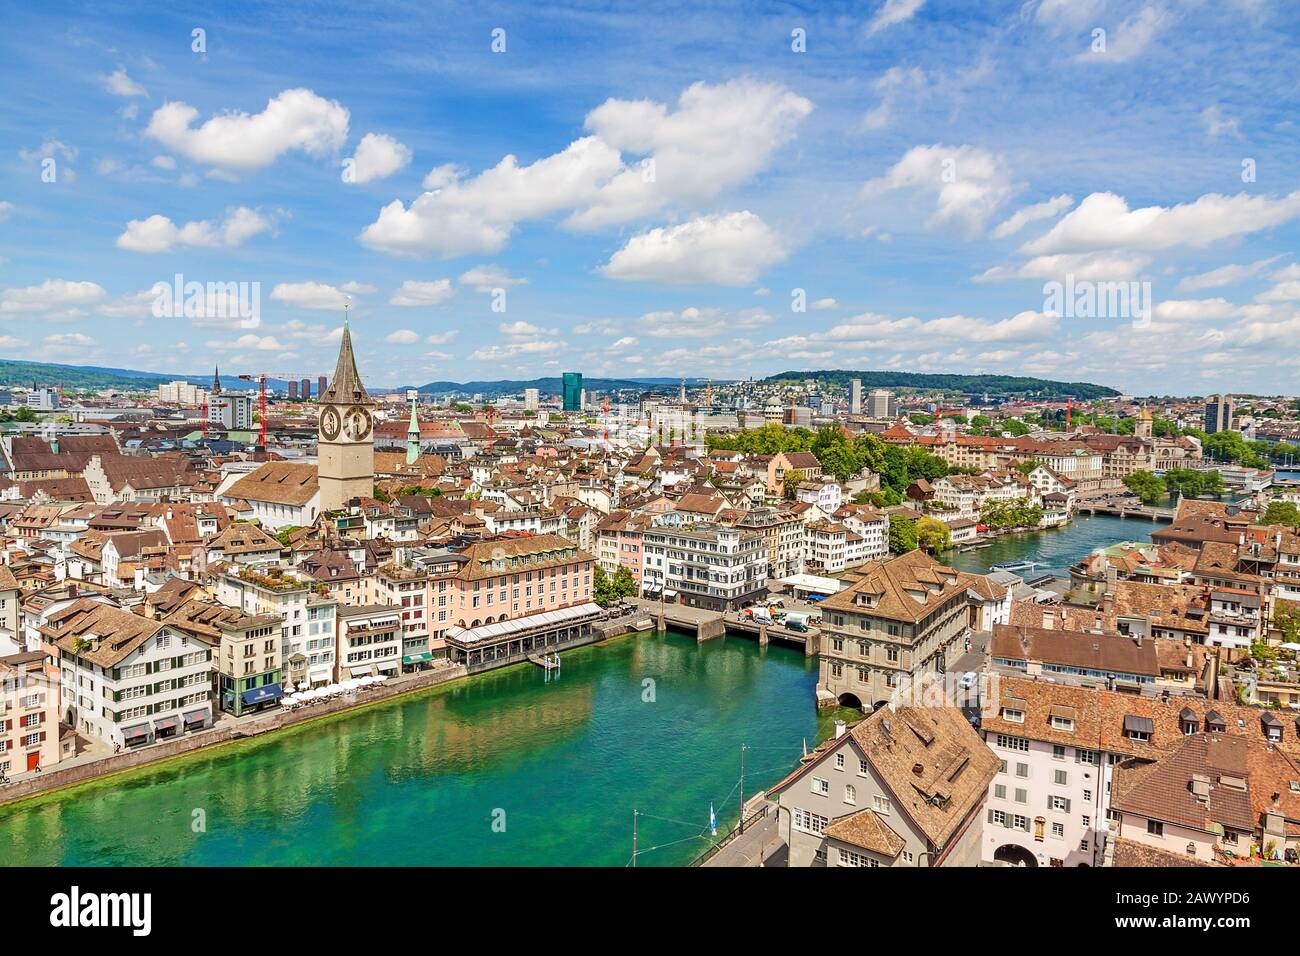 Züricher Innenstadt mit St. Peter Kirche, Rathaus und Limmat - Blick von der Großmunster Kirche an einem sonnigen Tag mit Wolken im Sommer, Kanton Z Stockfoto